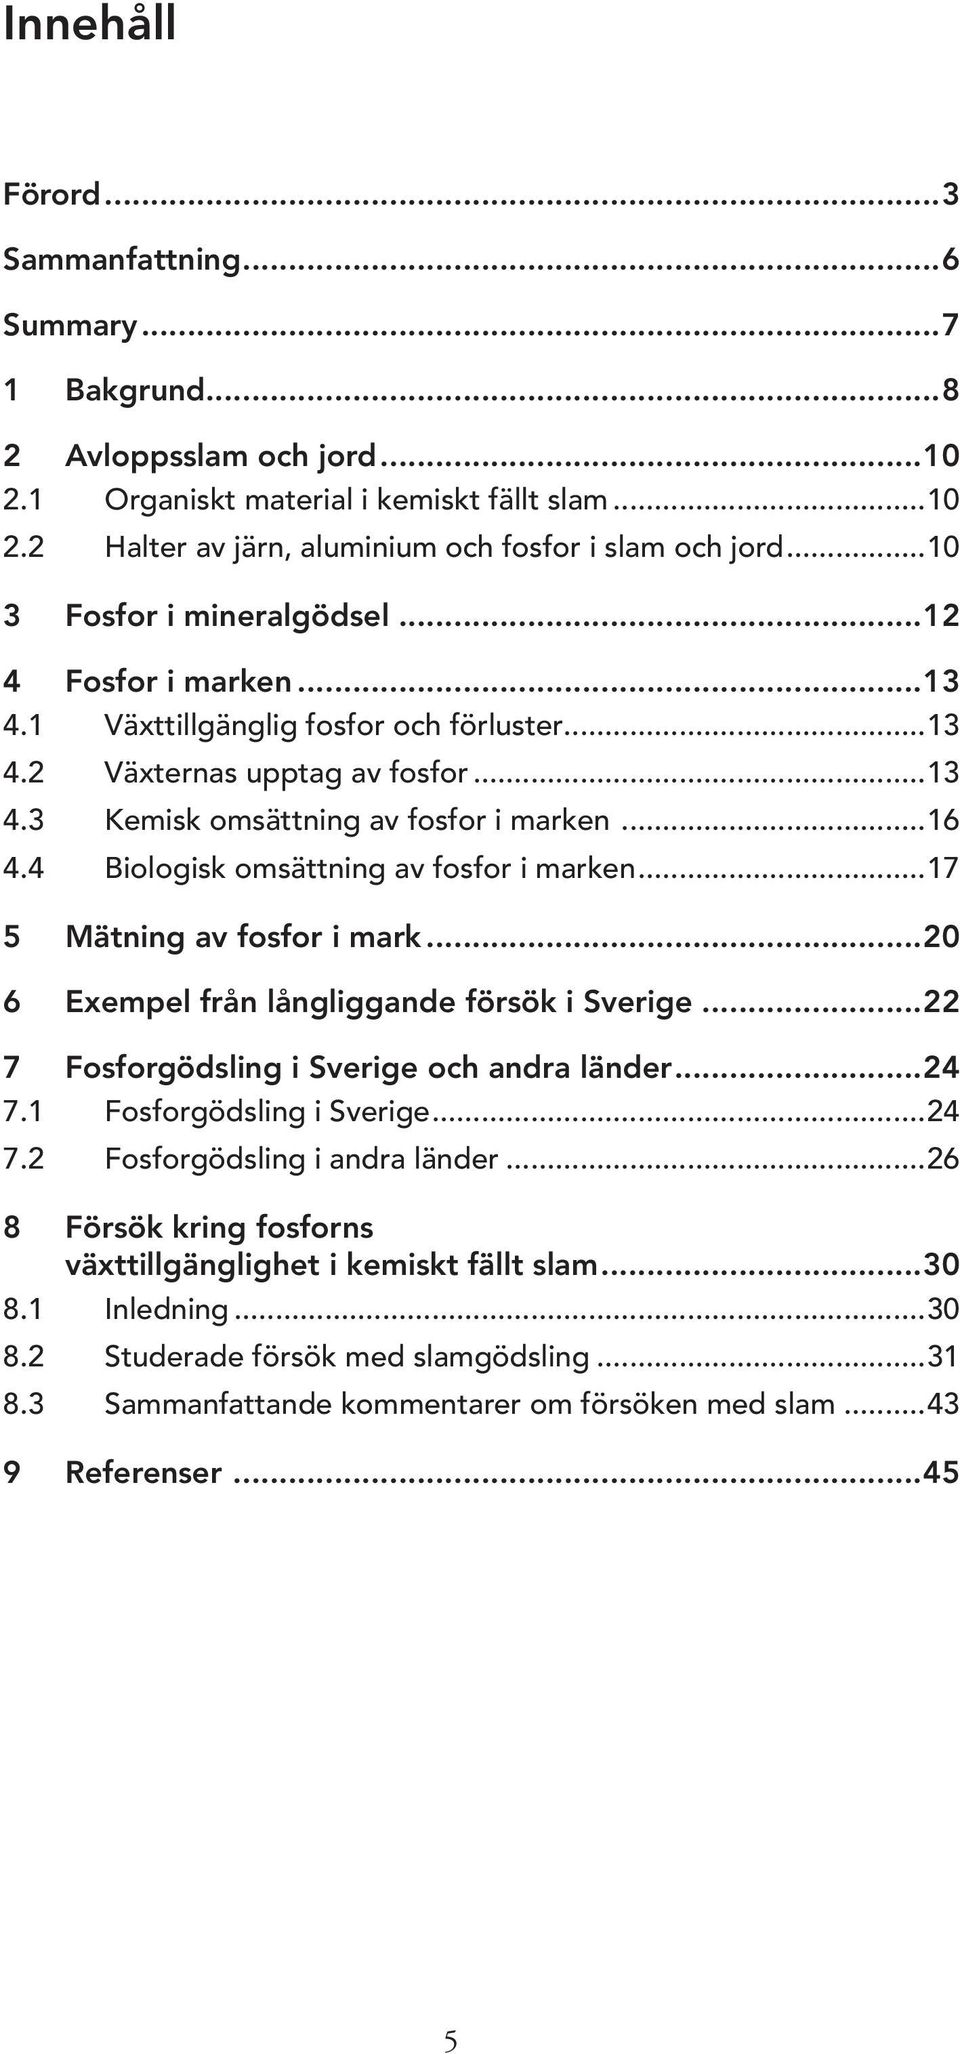 4 Biologisk omsättning av fosfor i marken...17 5 Mätning av fosfor i mark...20 6 Exempel från långliggande försök i Sverige...22 7 Fosforgödsling i Sverige och andra länder...24 7.